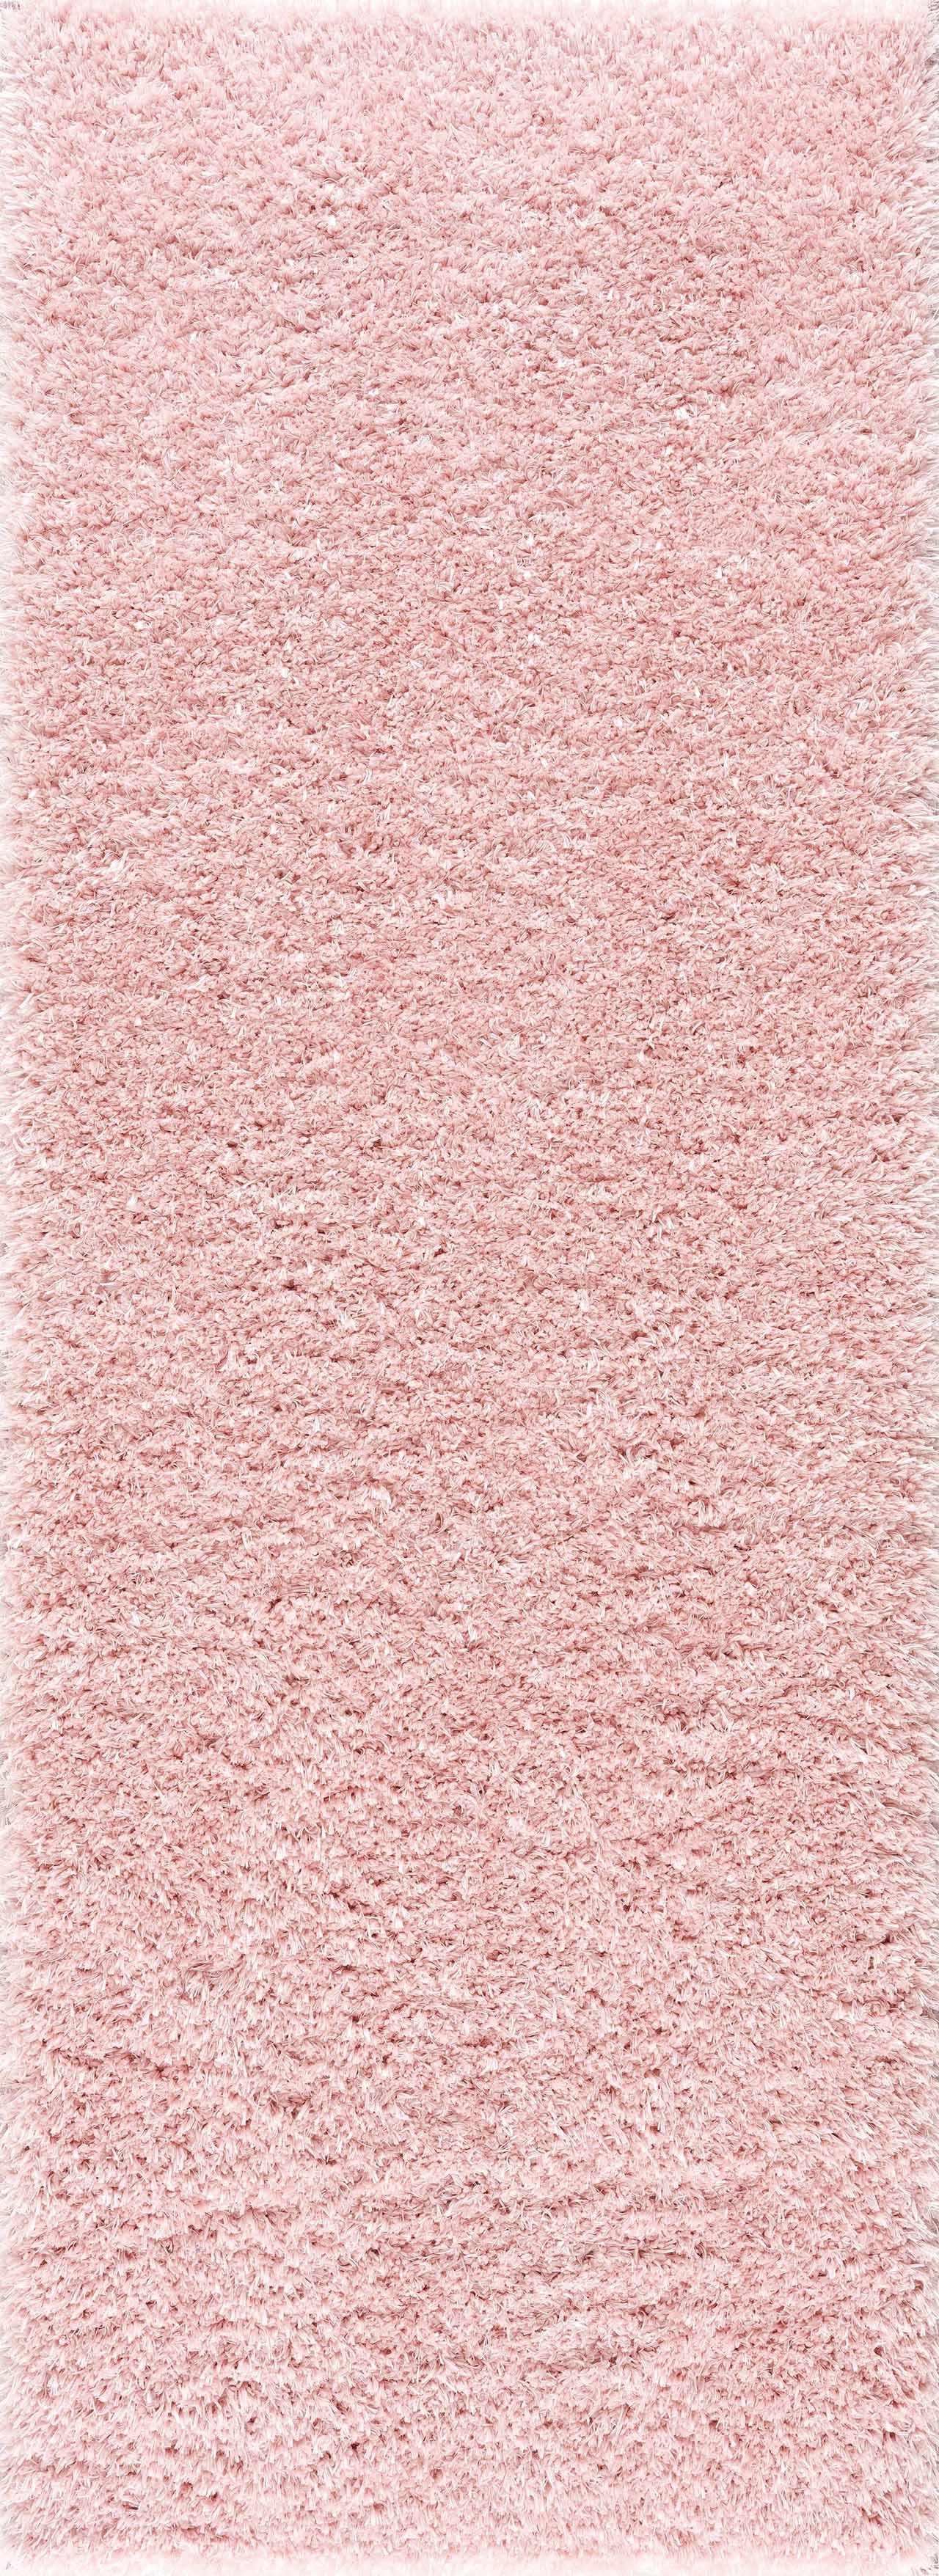 Faina Solid Pink Shag Rug Washable